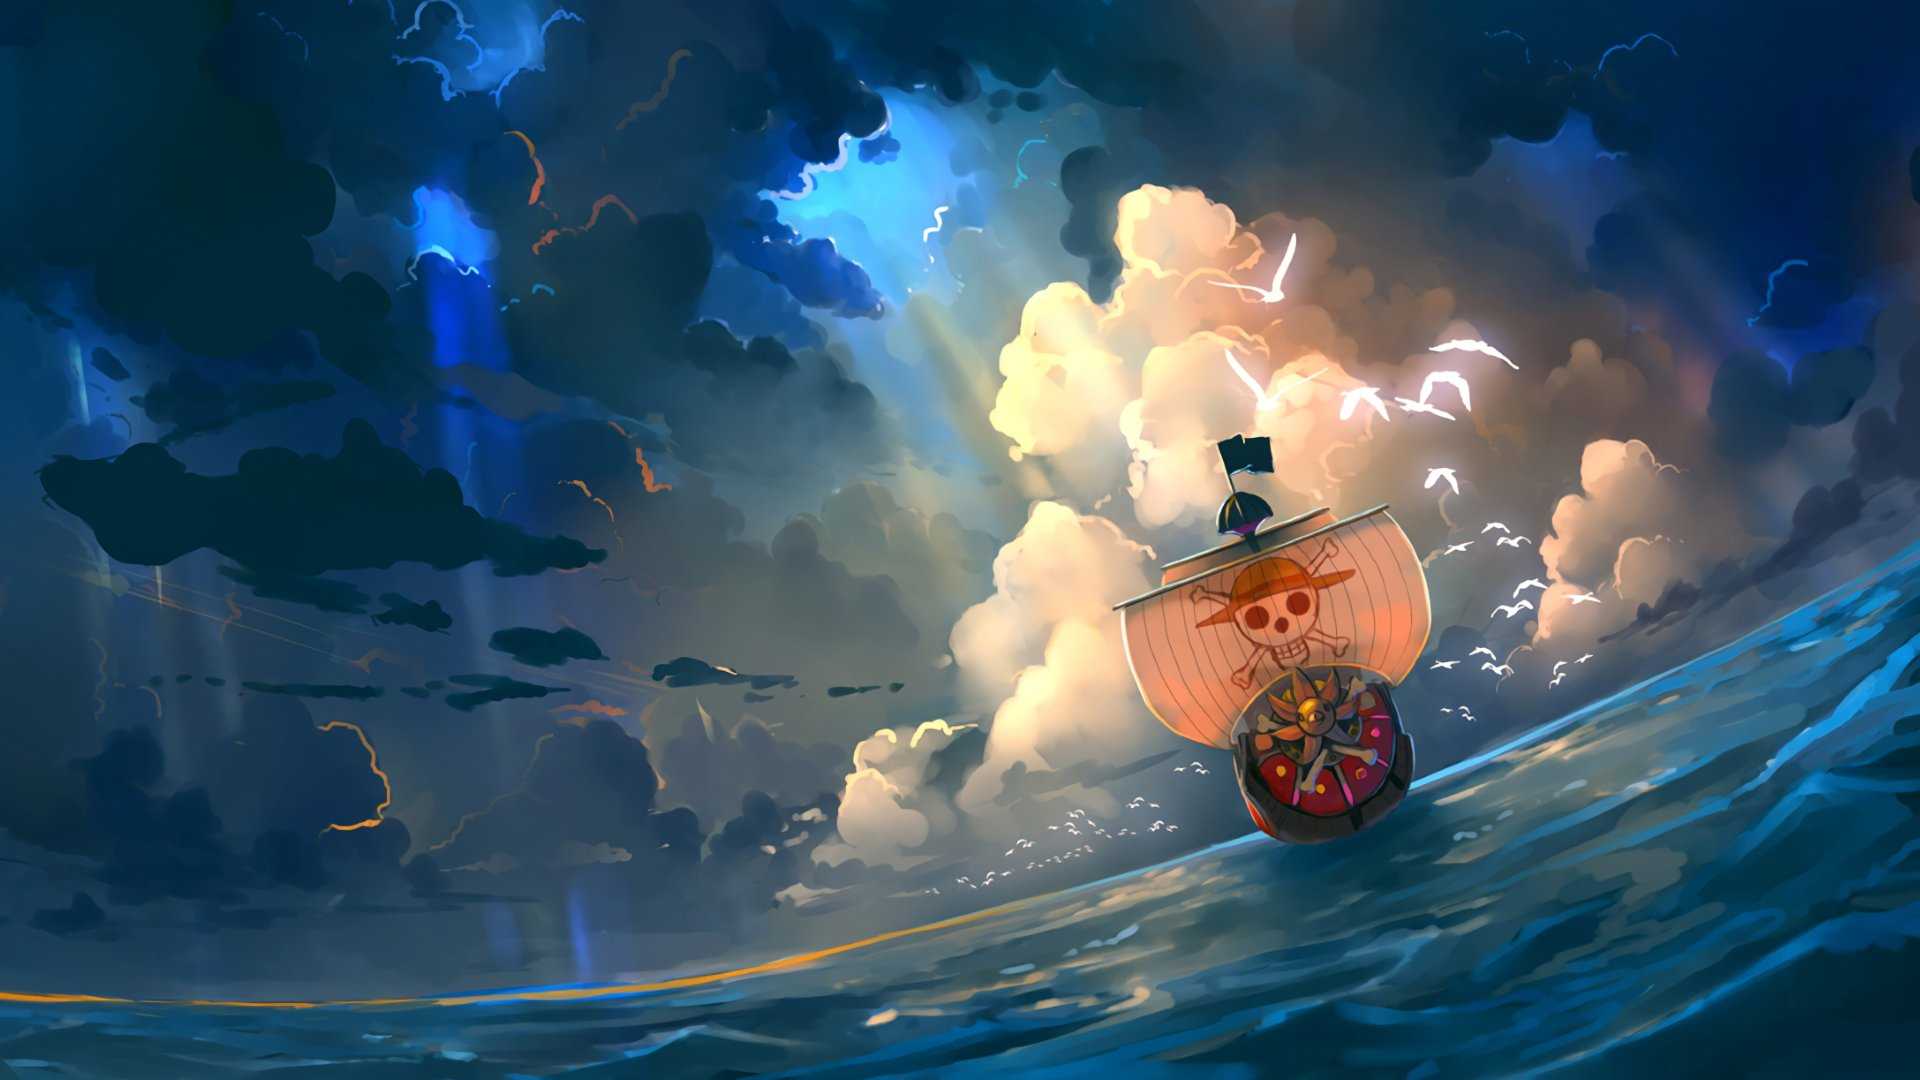 Hình nền One Piece đảo hải tặc 3D đẹp và chất nhất